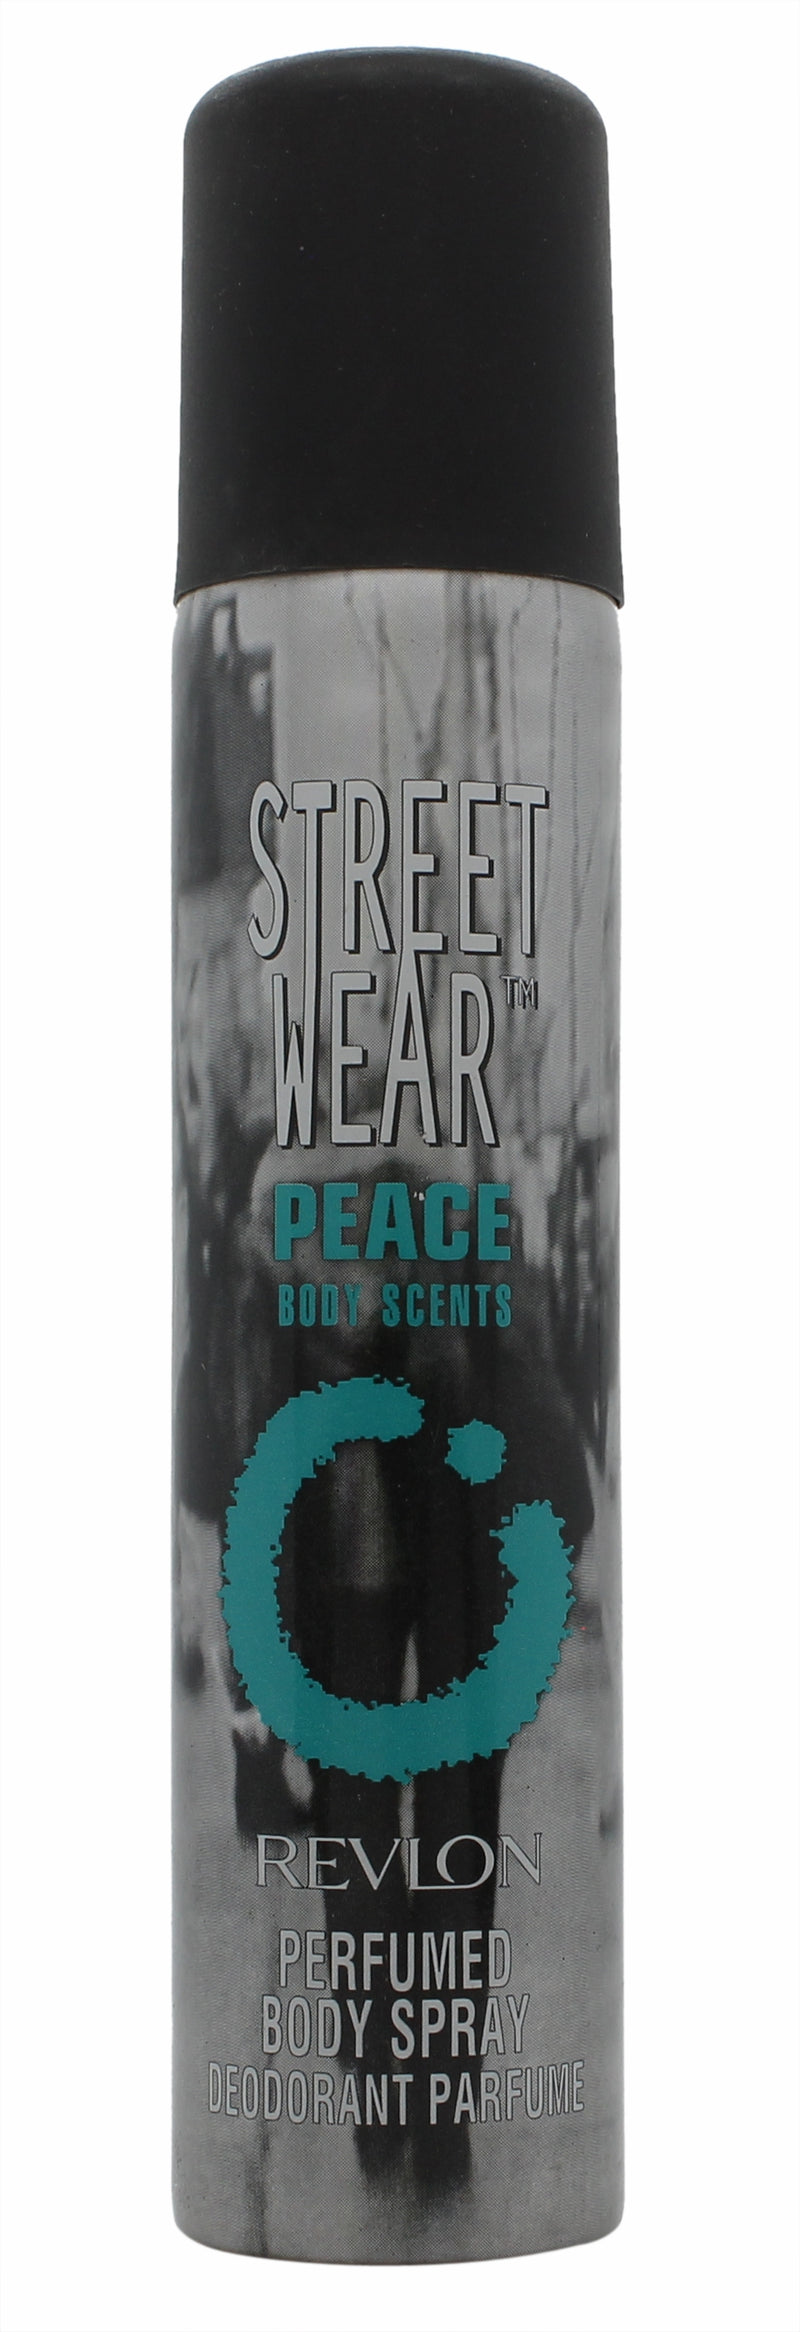 Revlon Street Wear Peace Body Spray 75ml